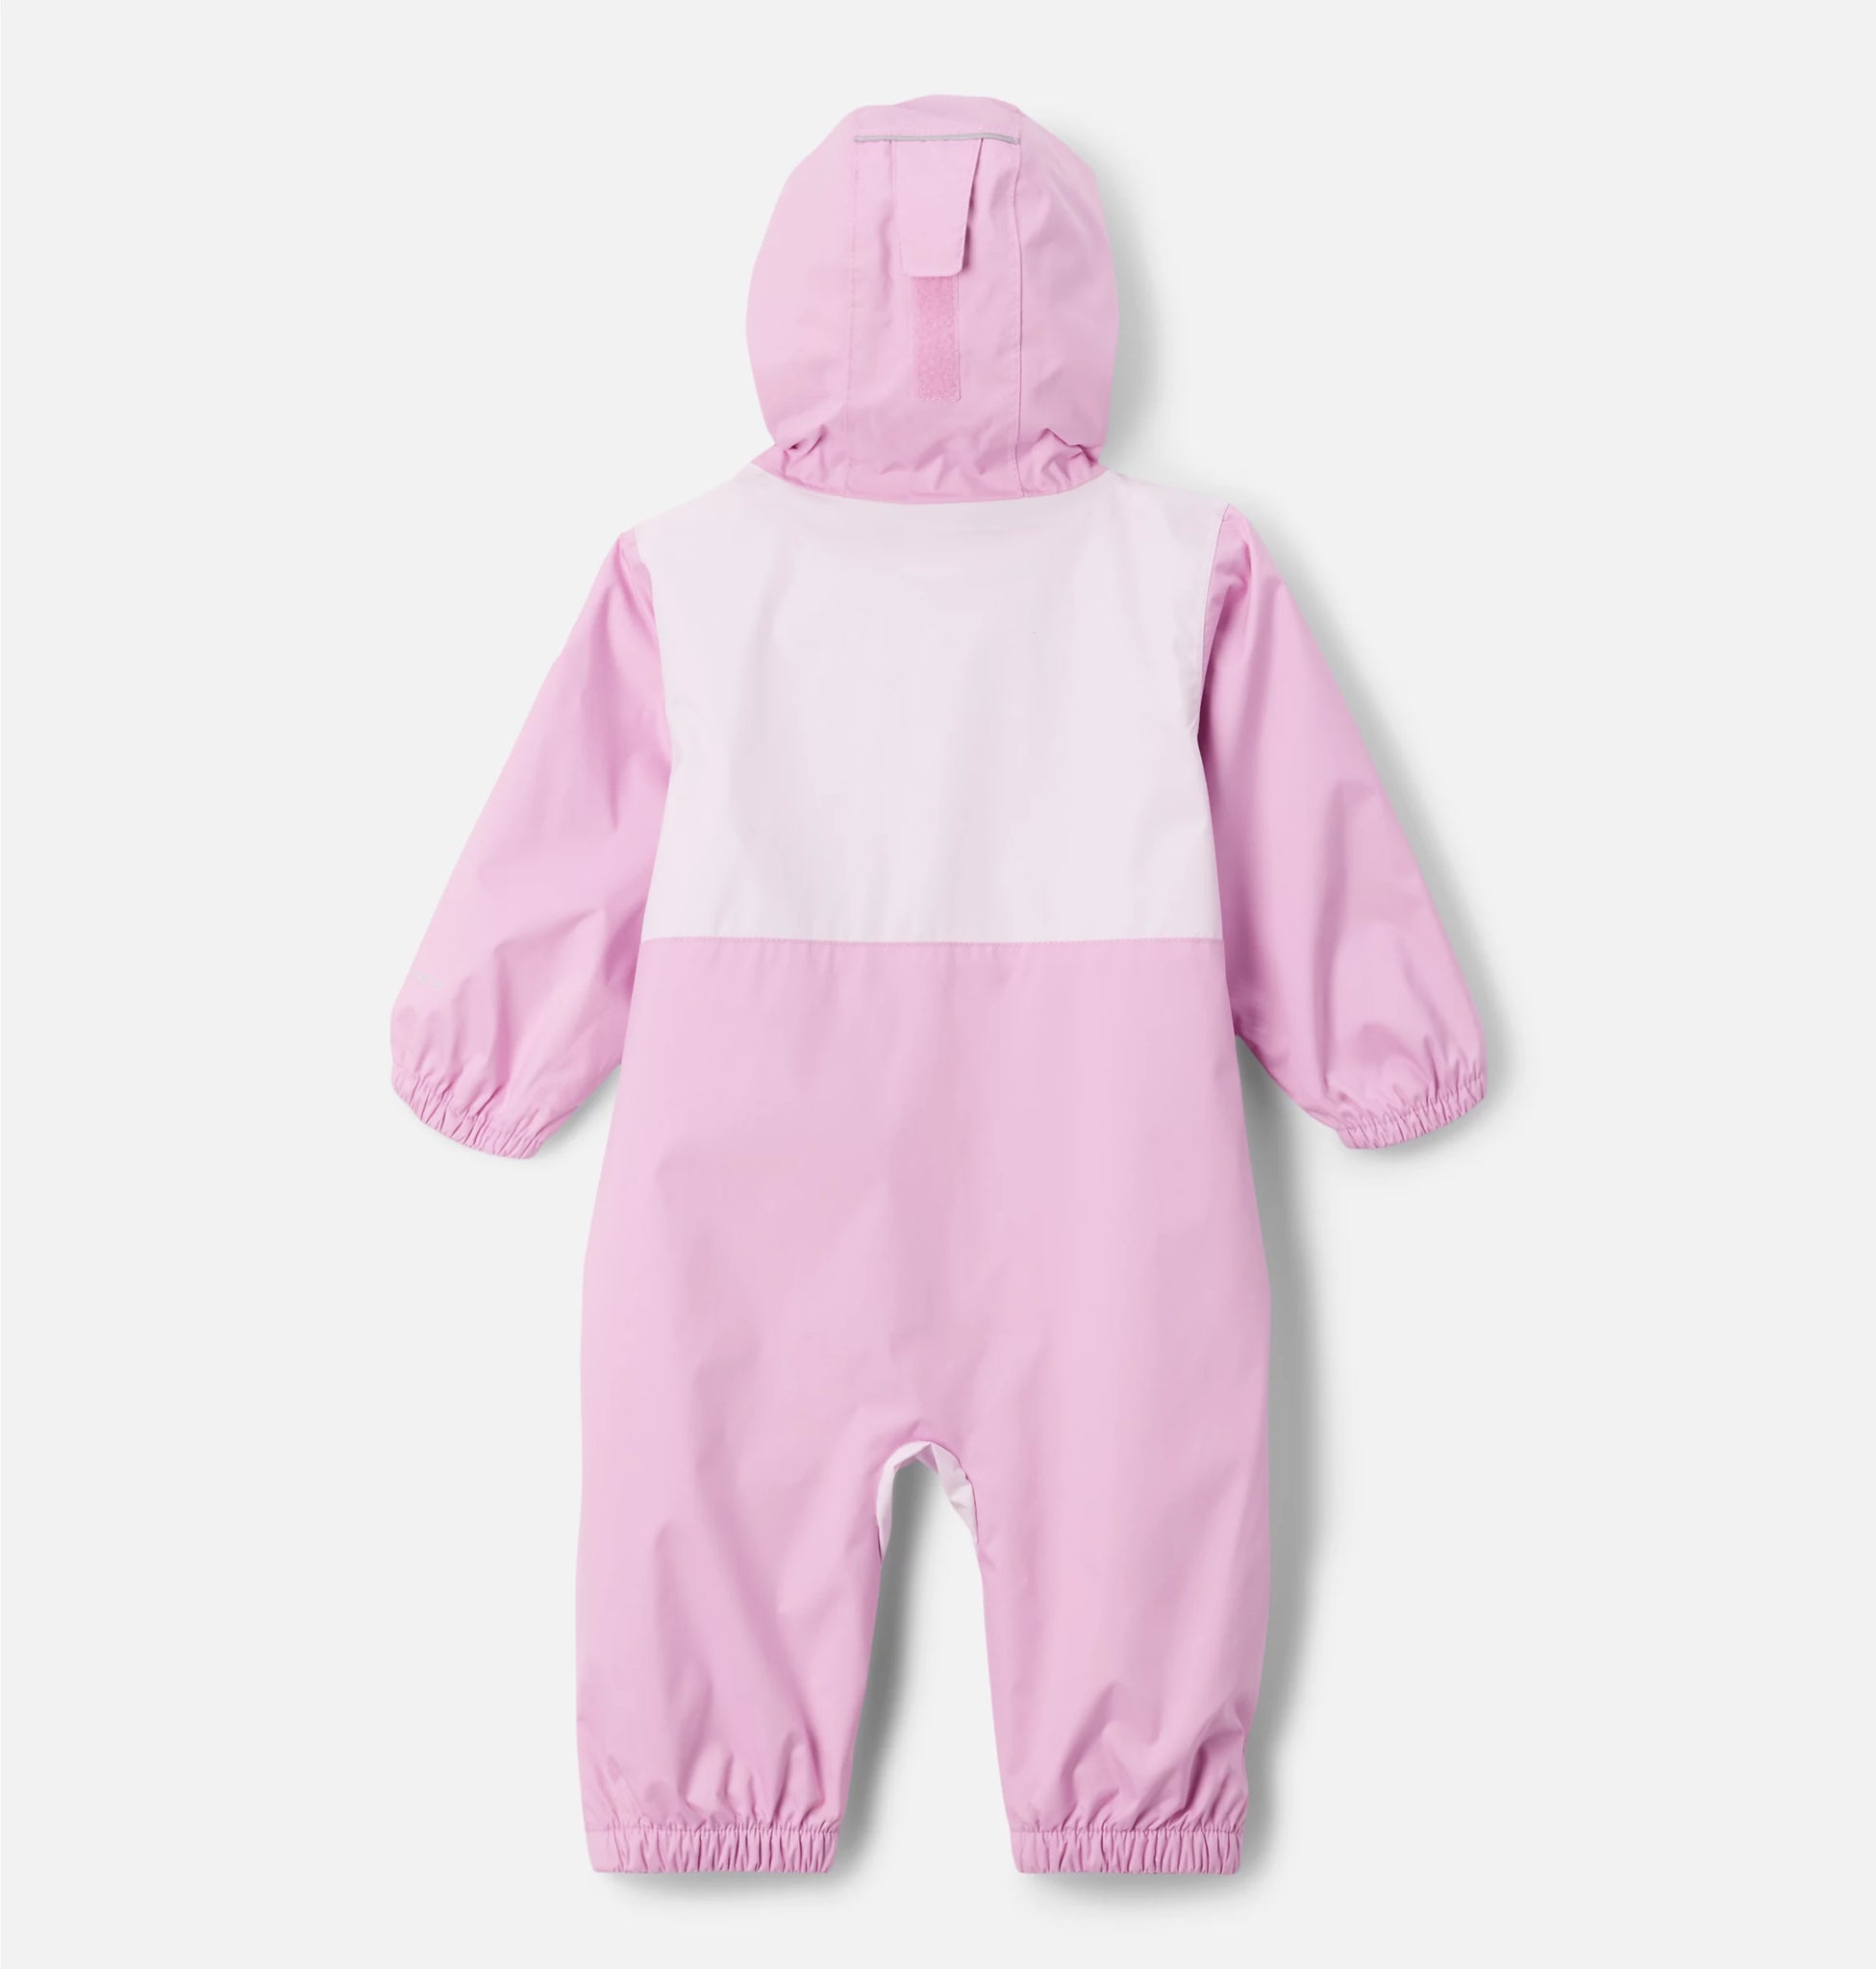 Kombinezon przeciwdeszczowy dla dzieci do 2 lat Columbia Infant Critter Jumper Rain Suit